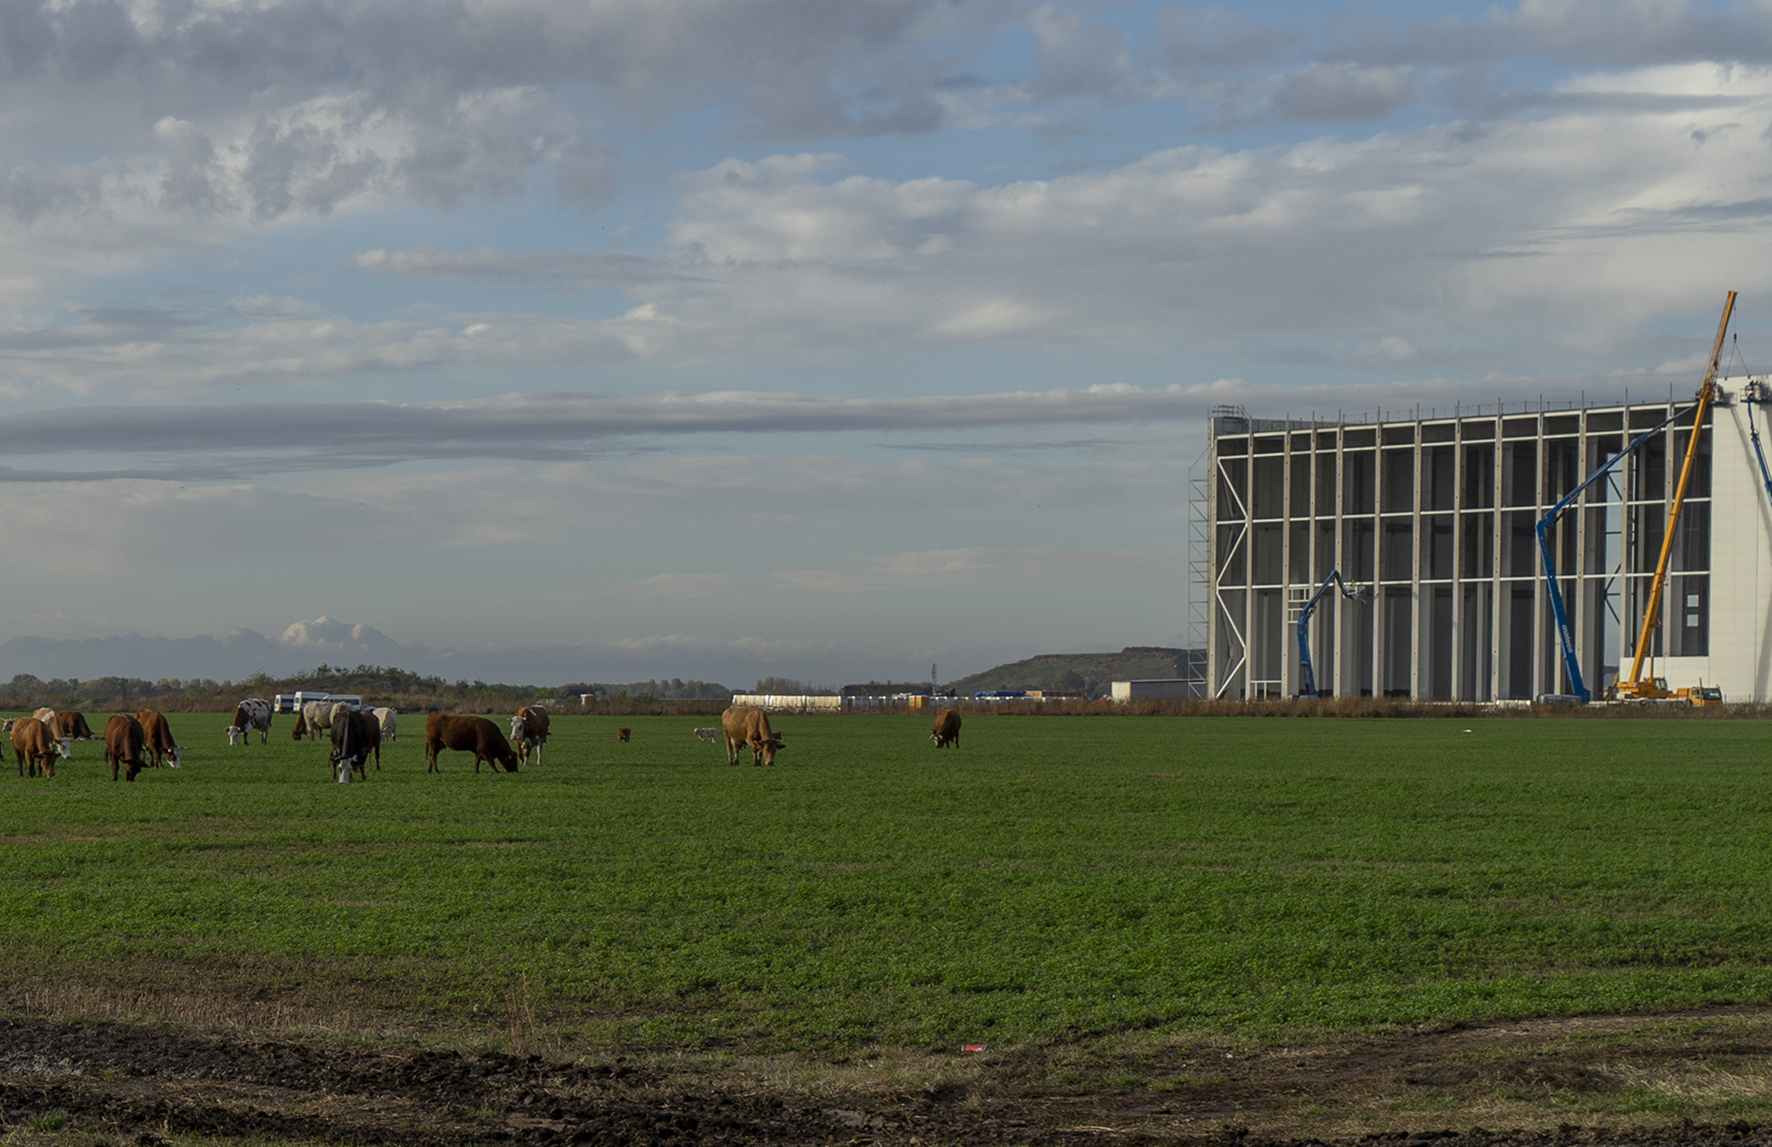 Képgaléria: Gigantikus akkumulátor-komplexum épül Debrecen mellett, az árnyékában tehenek legelnek